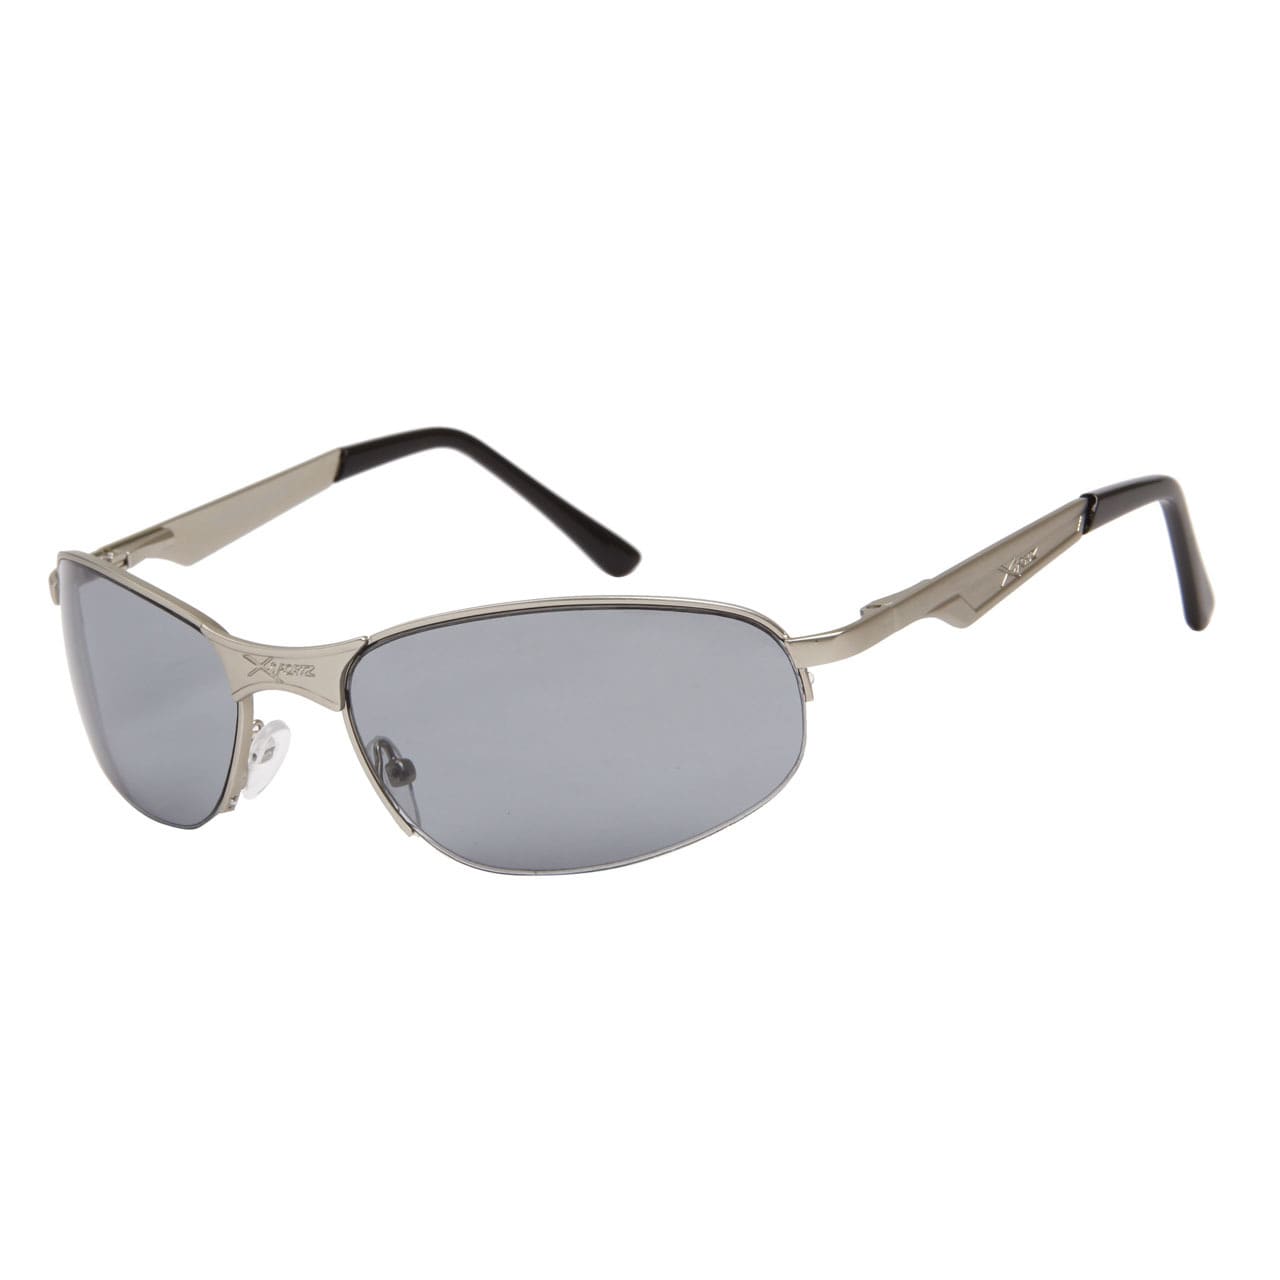 XSPORTZ Solglasögon -  Ljusgrå glas och silverbågar